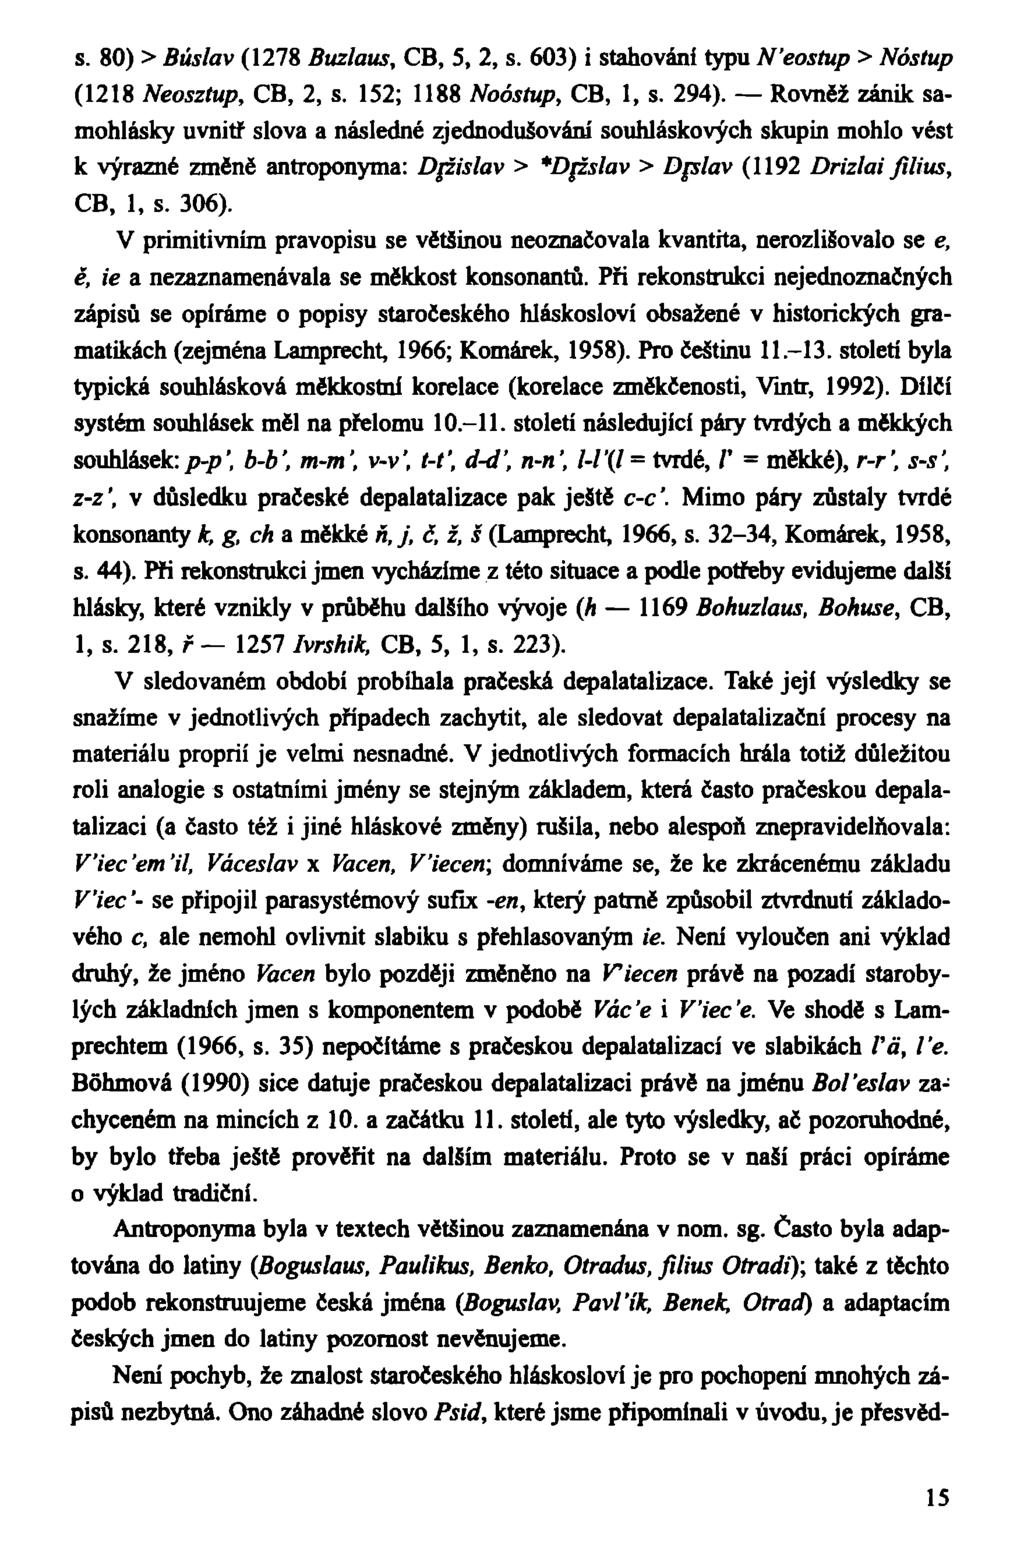 s. 80) > Búslav (1278 Buzlaus, CB, 5, 2, s. 603) i stahování typu N'eostup > Nástup (1218 Neosztup, CB, 2, s. 152; 1188 Noóstup, CB, 1, s. 294).